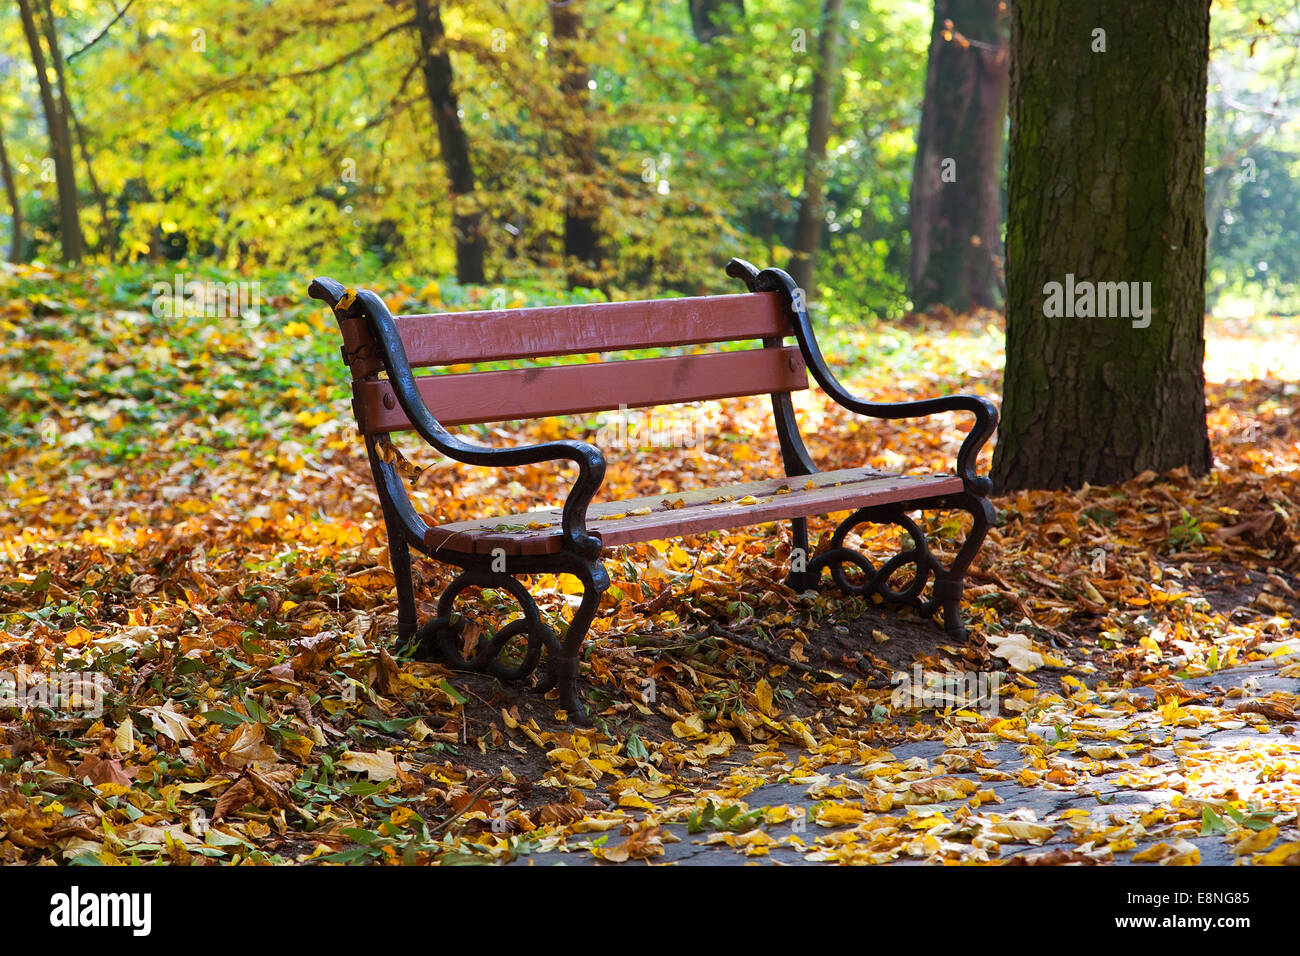 Panca in legno in uno scenario di autunno Foto Stock